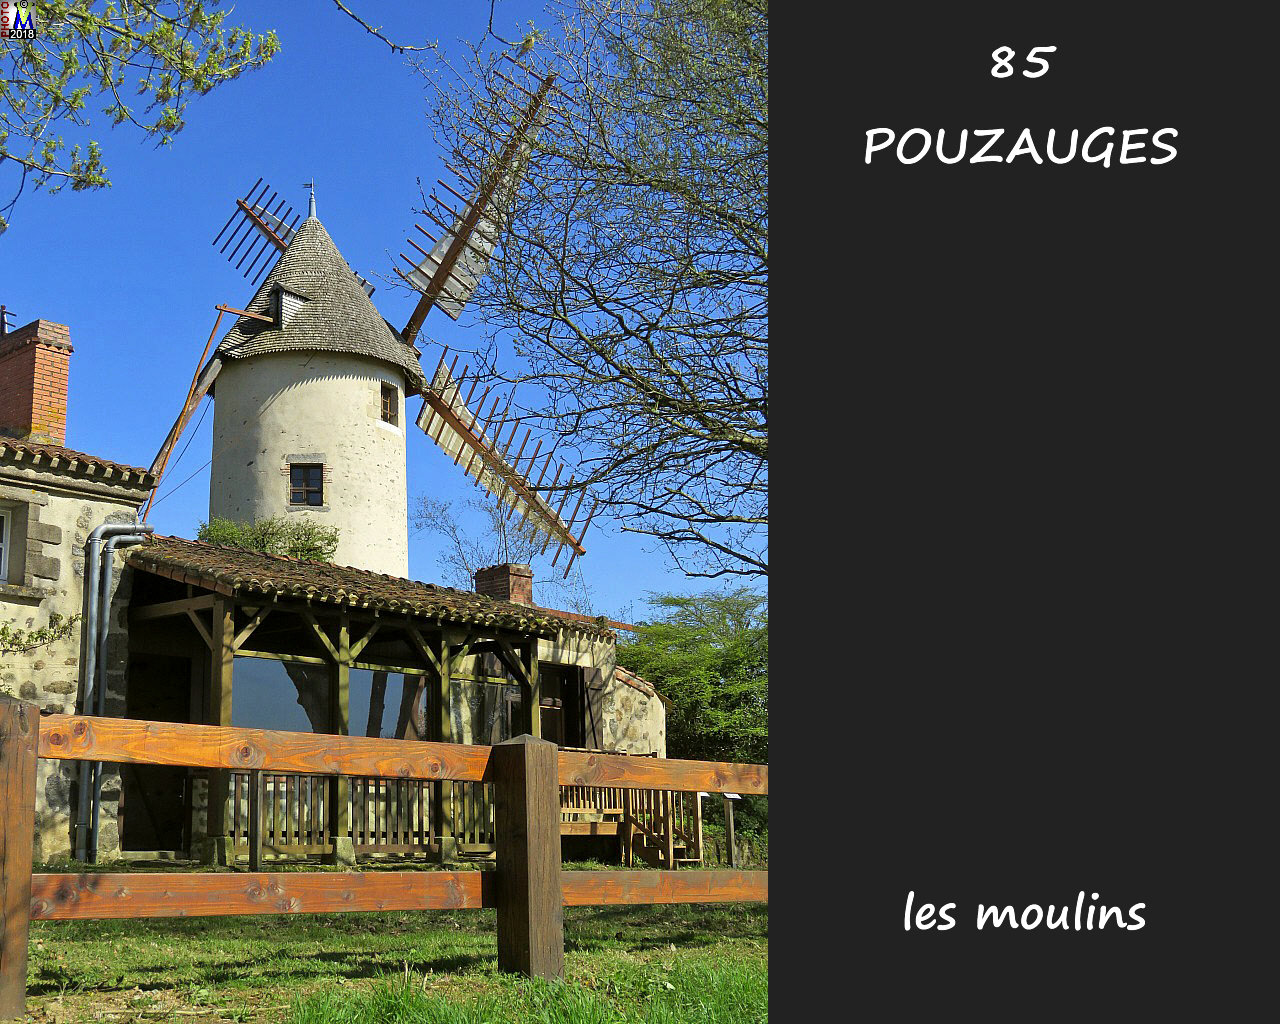 85POUZAUGES_moulins_1002.jpg